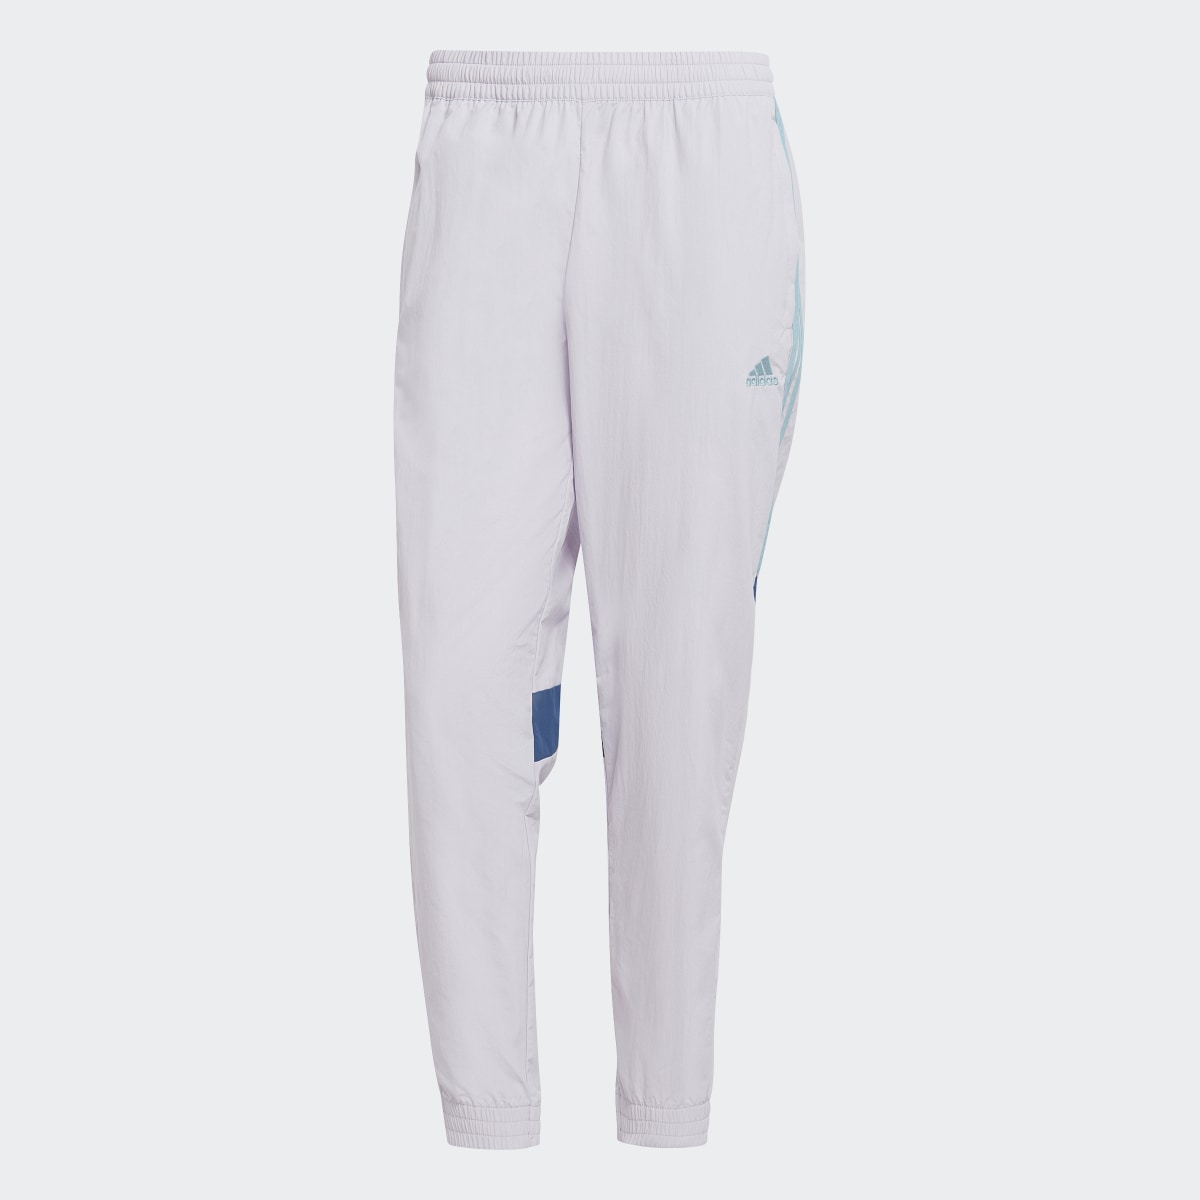 Adidas Pantaloni Tiro. 4